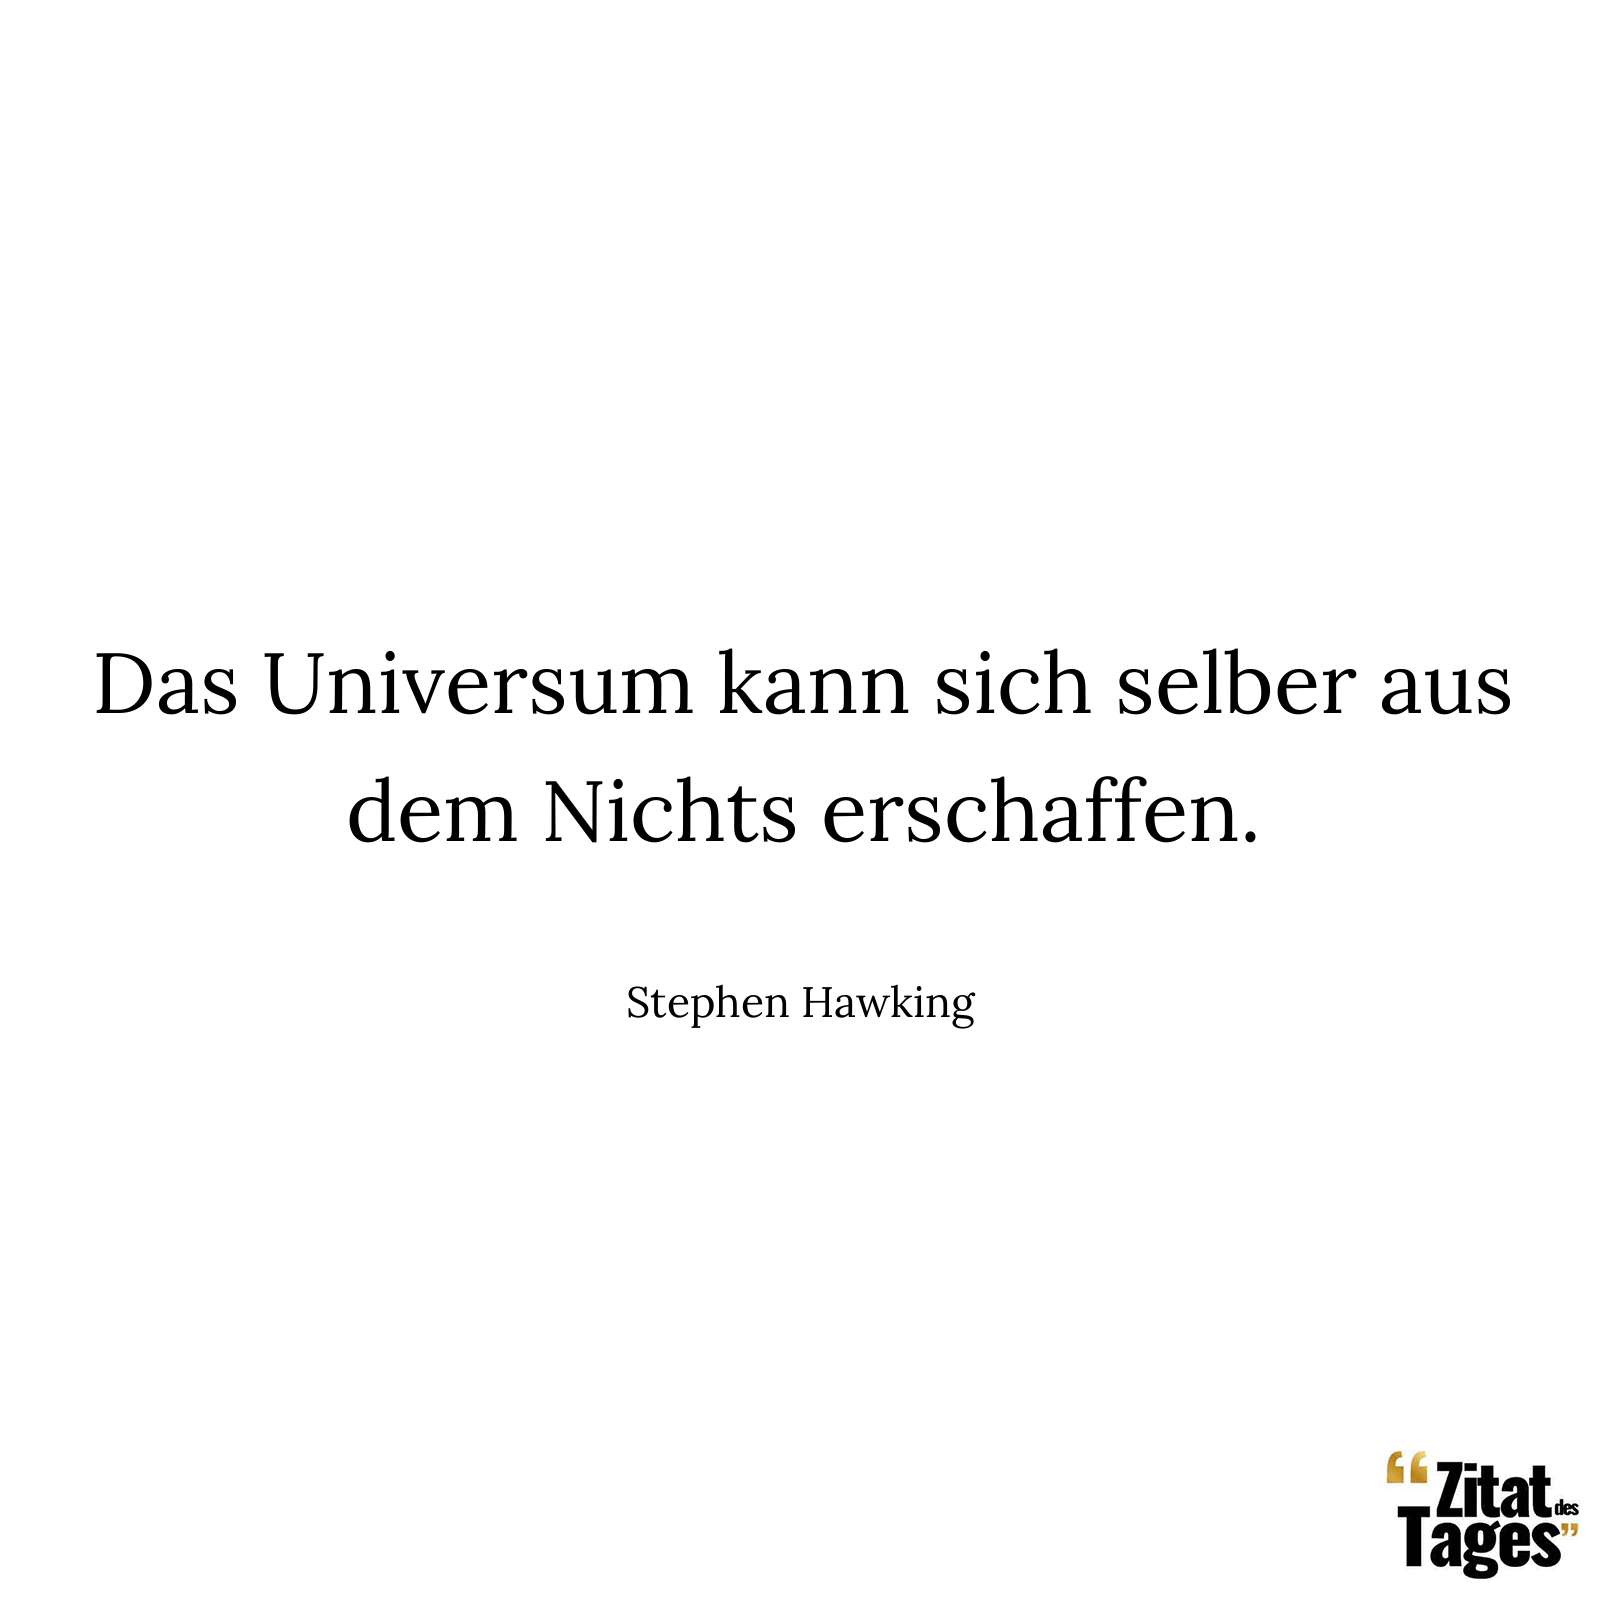 Das Universum kann sich selber aus dem Nichts erschaffen. - Stephen Hawking